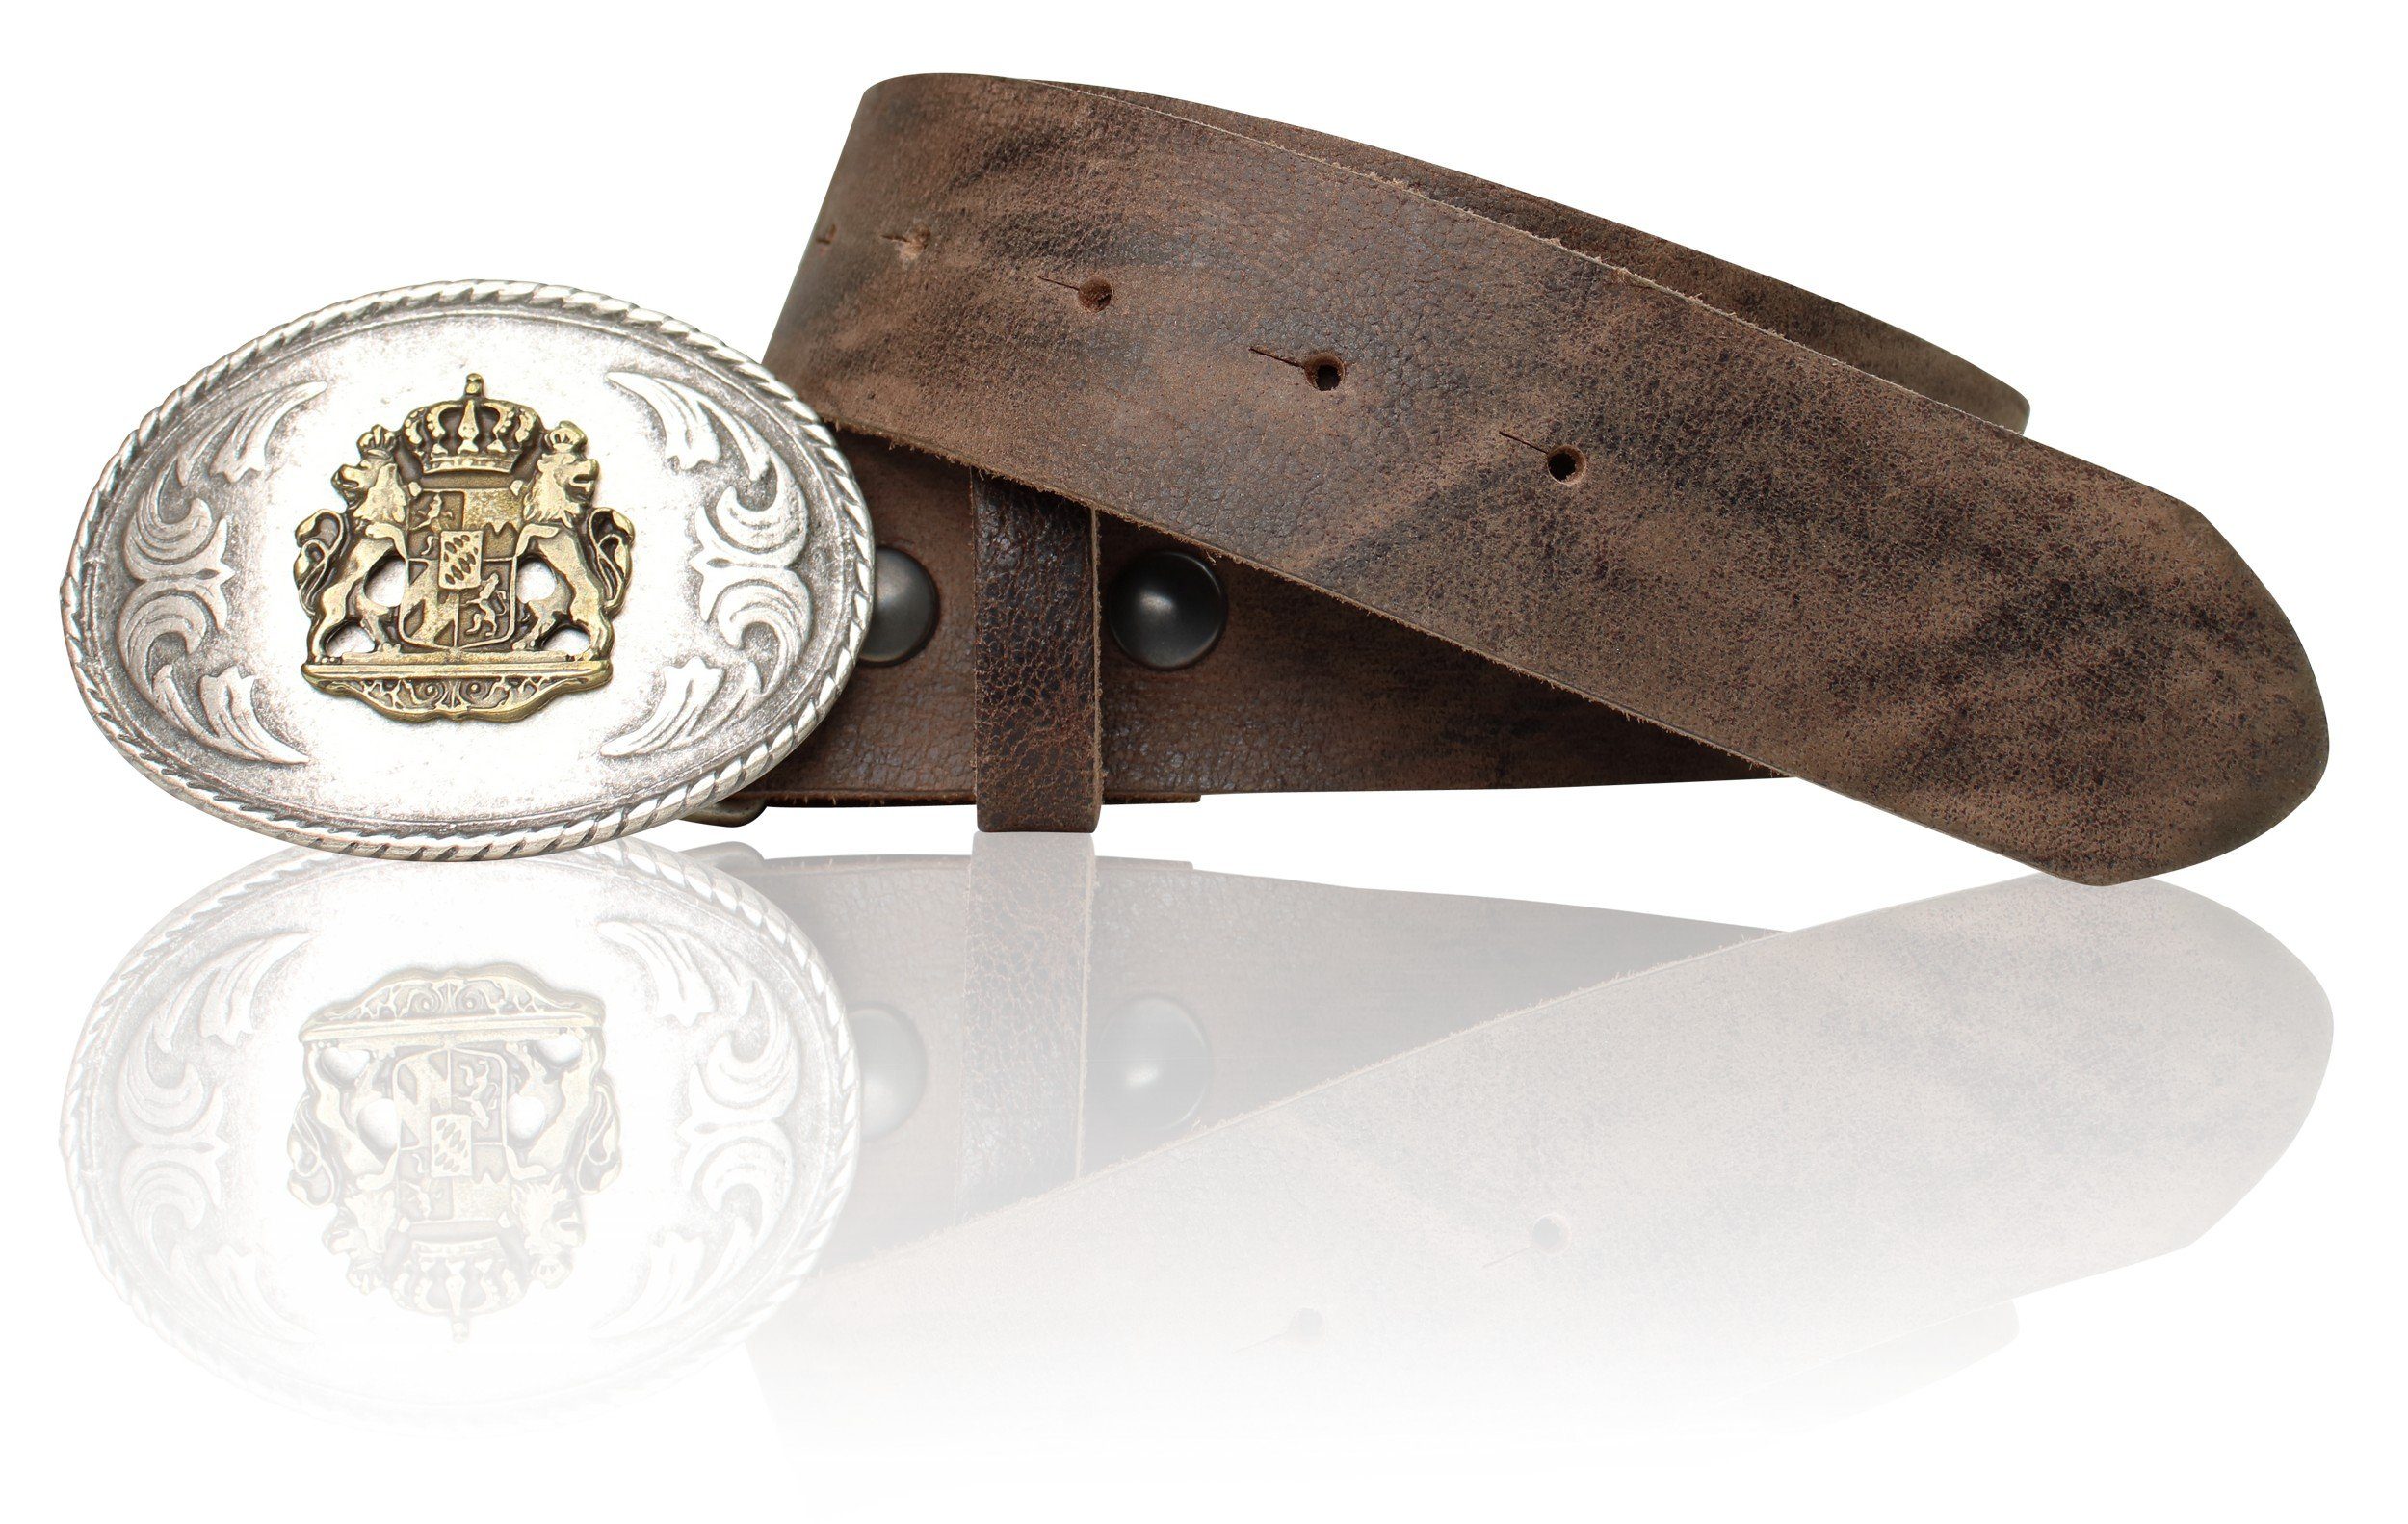 Bayernwappen Leder 18951 zweifarbig, Ledergürtel echt Trachtengürtel FRONHOFER Vintage-braun mit